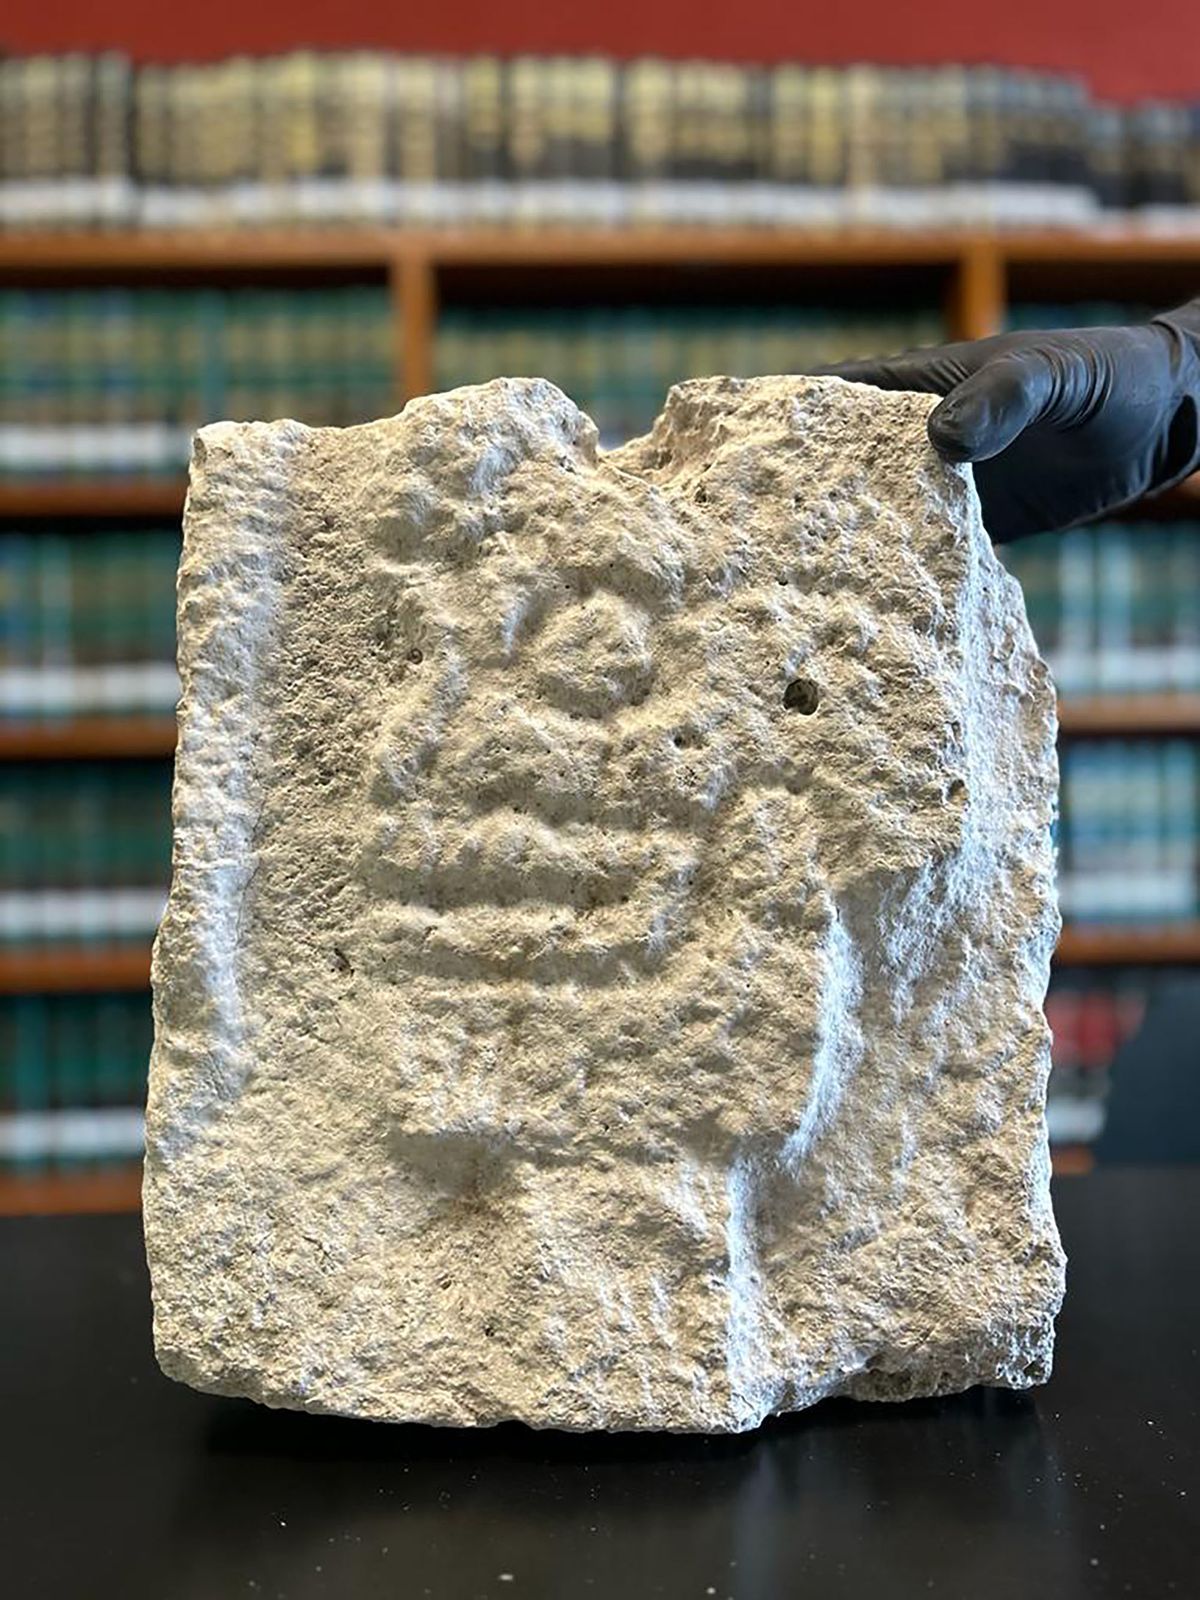 A Maya skull relief carving found in a German antique shop is now back in Mexican hands Instituto Nacional de Antropología e Historia, Secretaría de Relaciones Exteriores